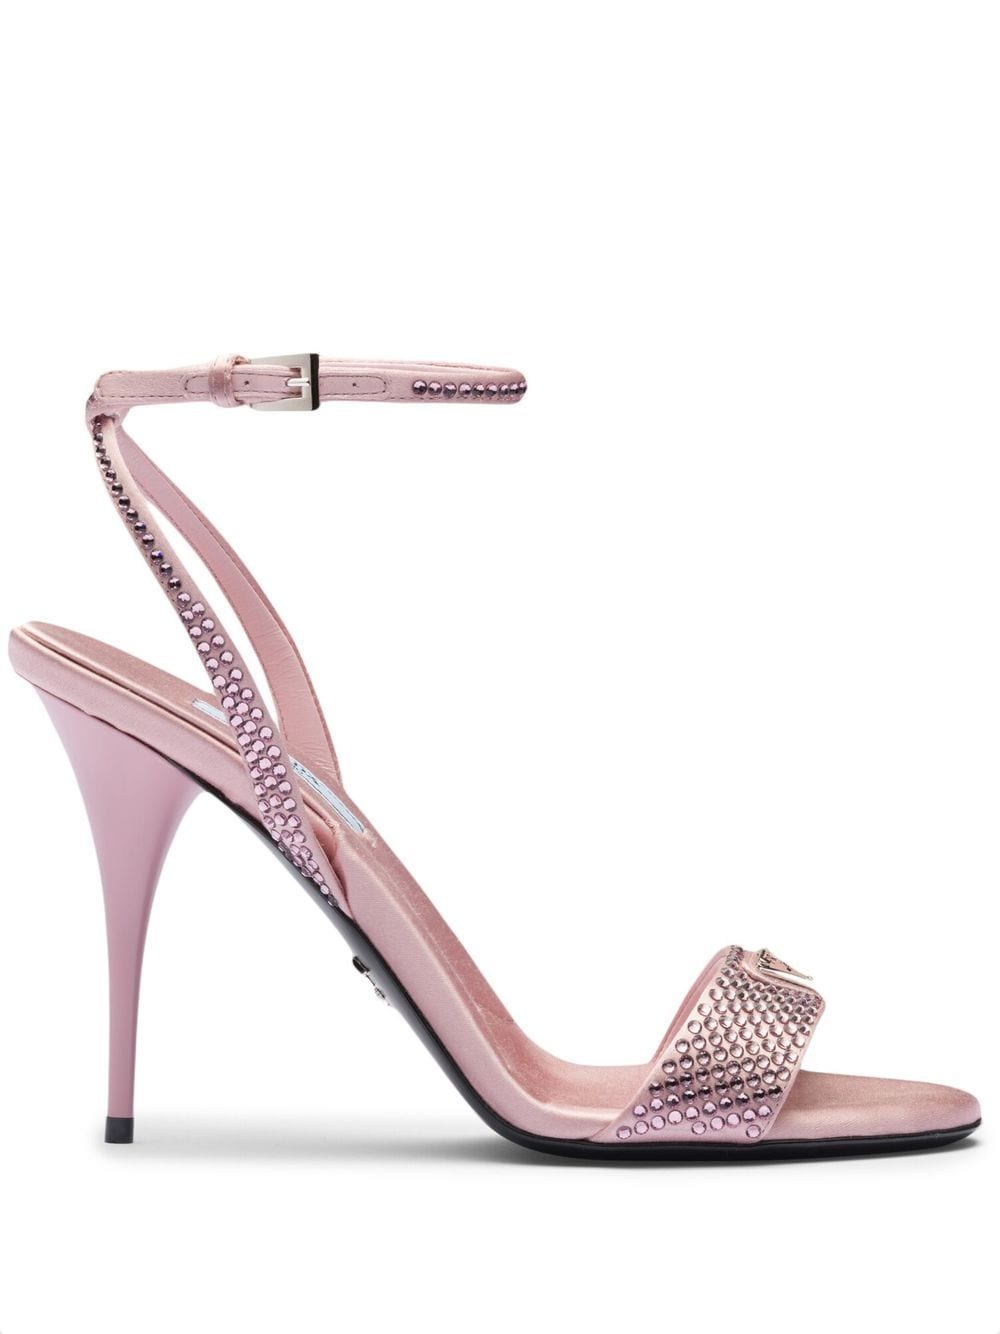 Prada crystal-embellished satin sandals - Pink